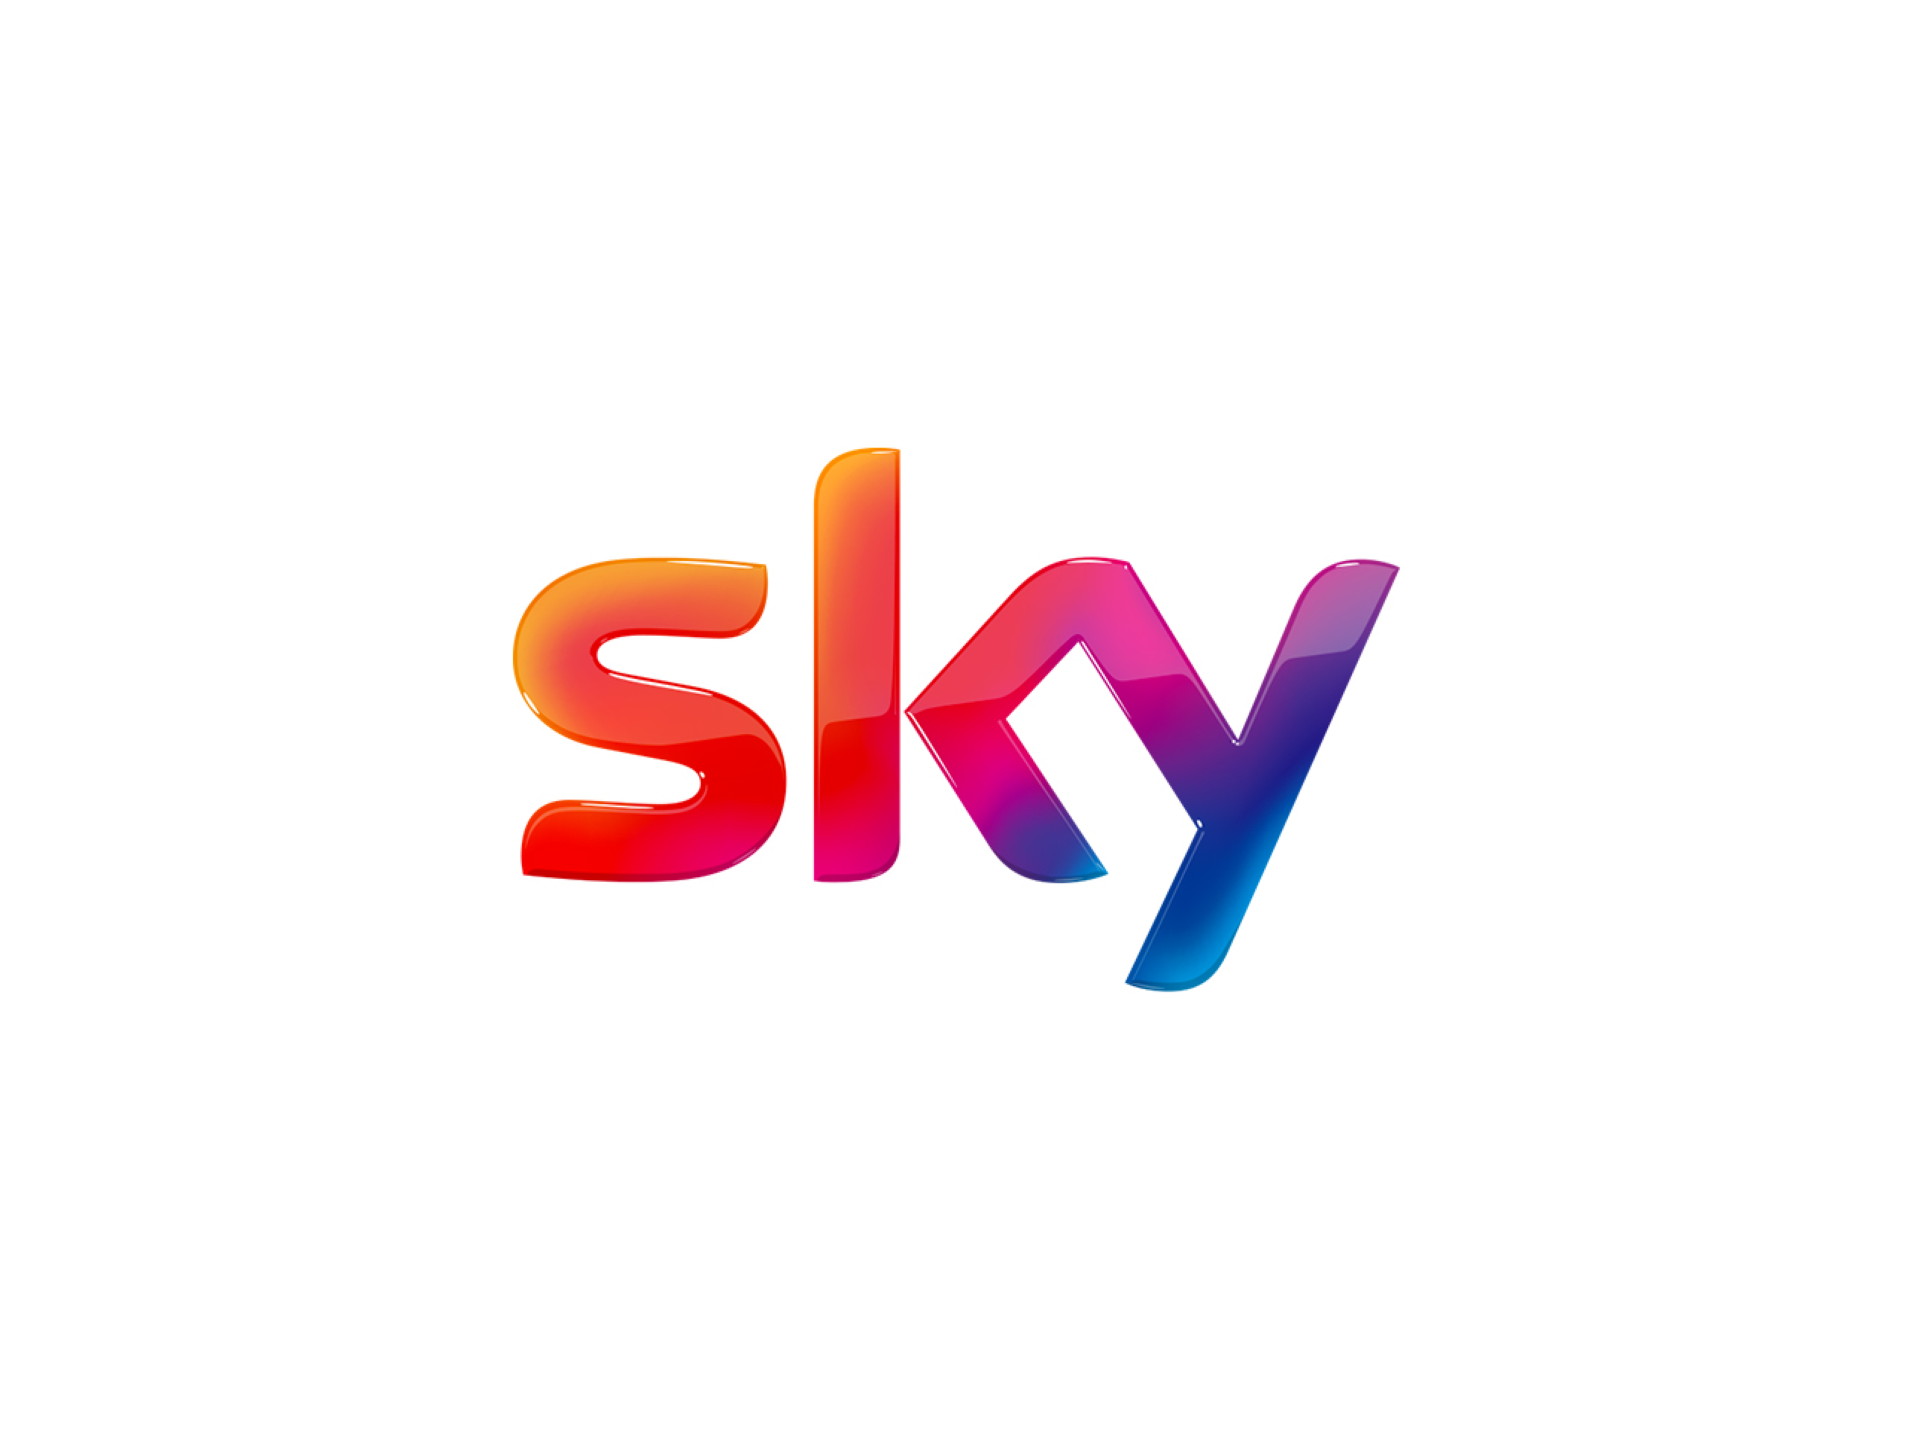 L’app Sky Go ora permette di vedere anche i canali di Sky Italia